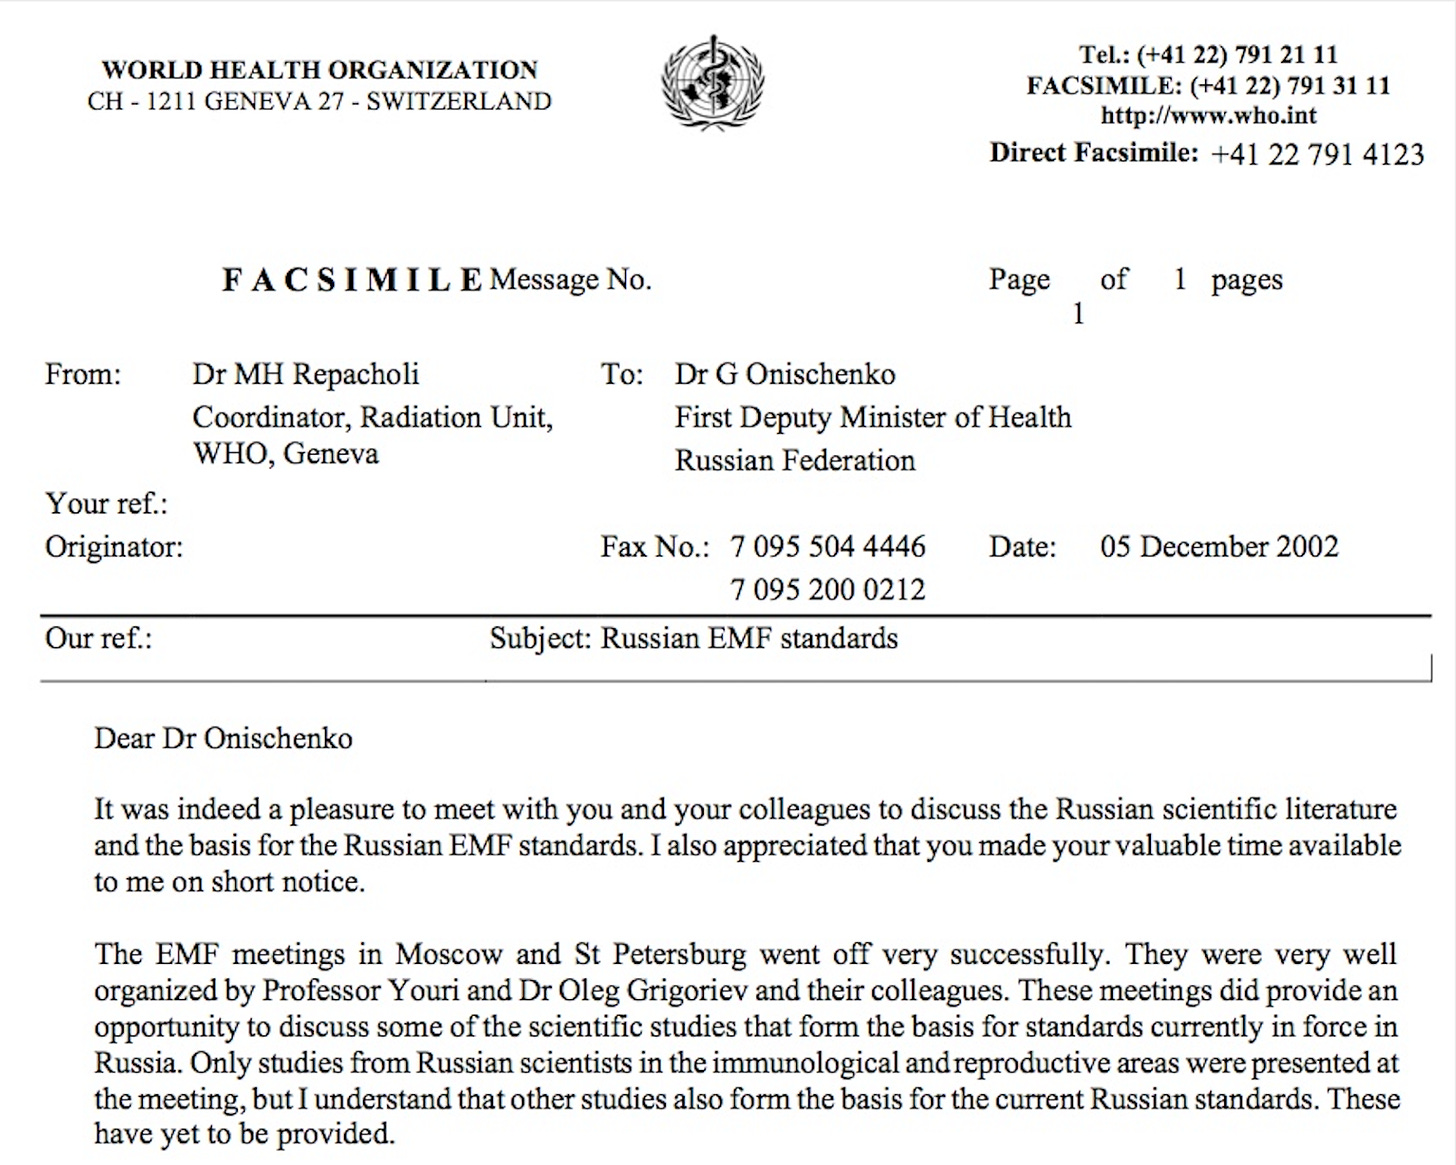 Fax from M repacholi to G Onischenko 2002